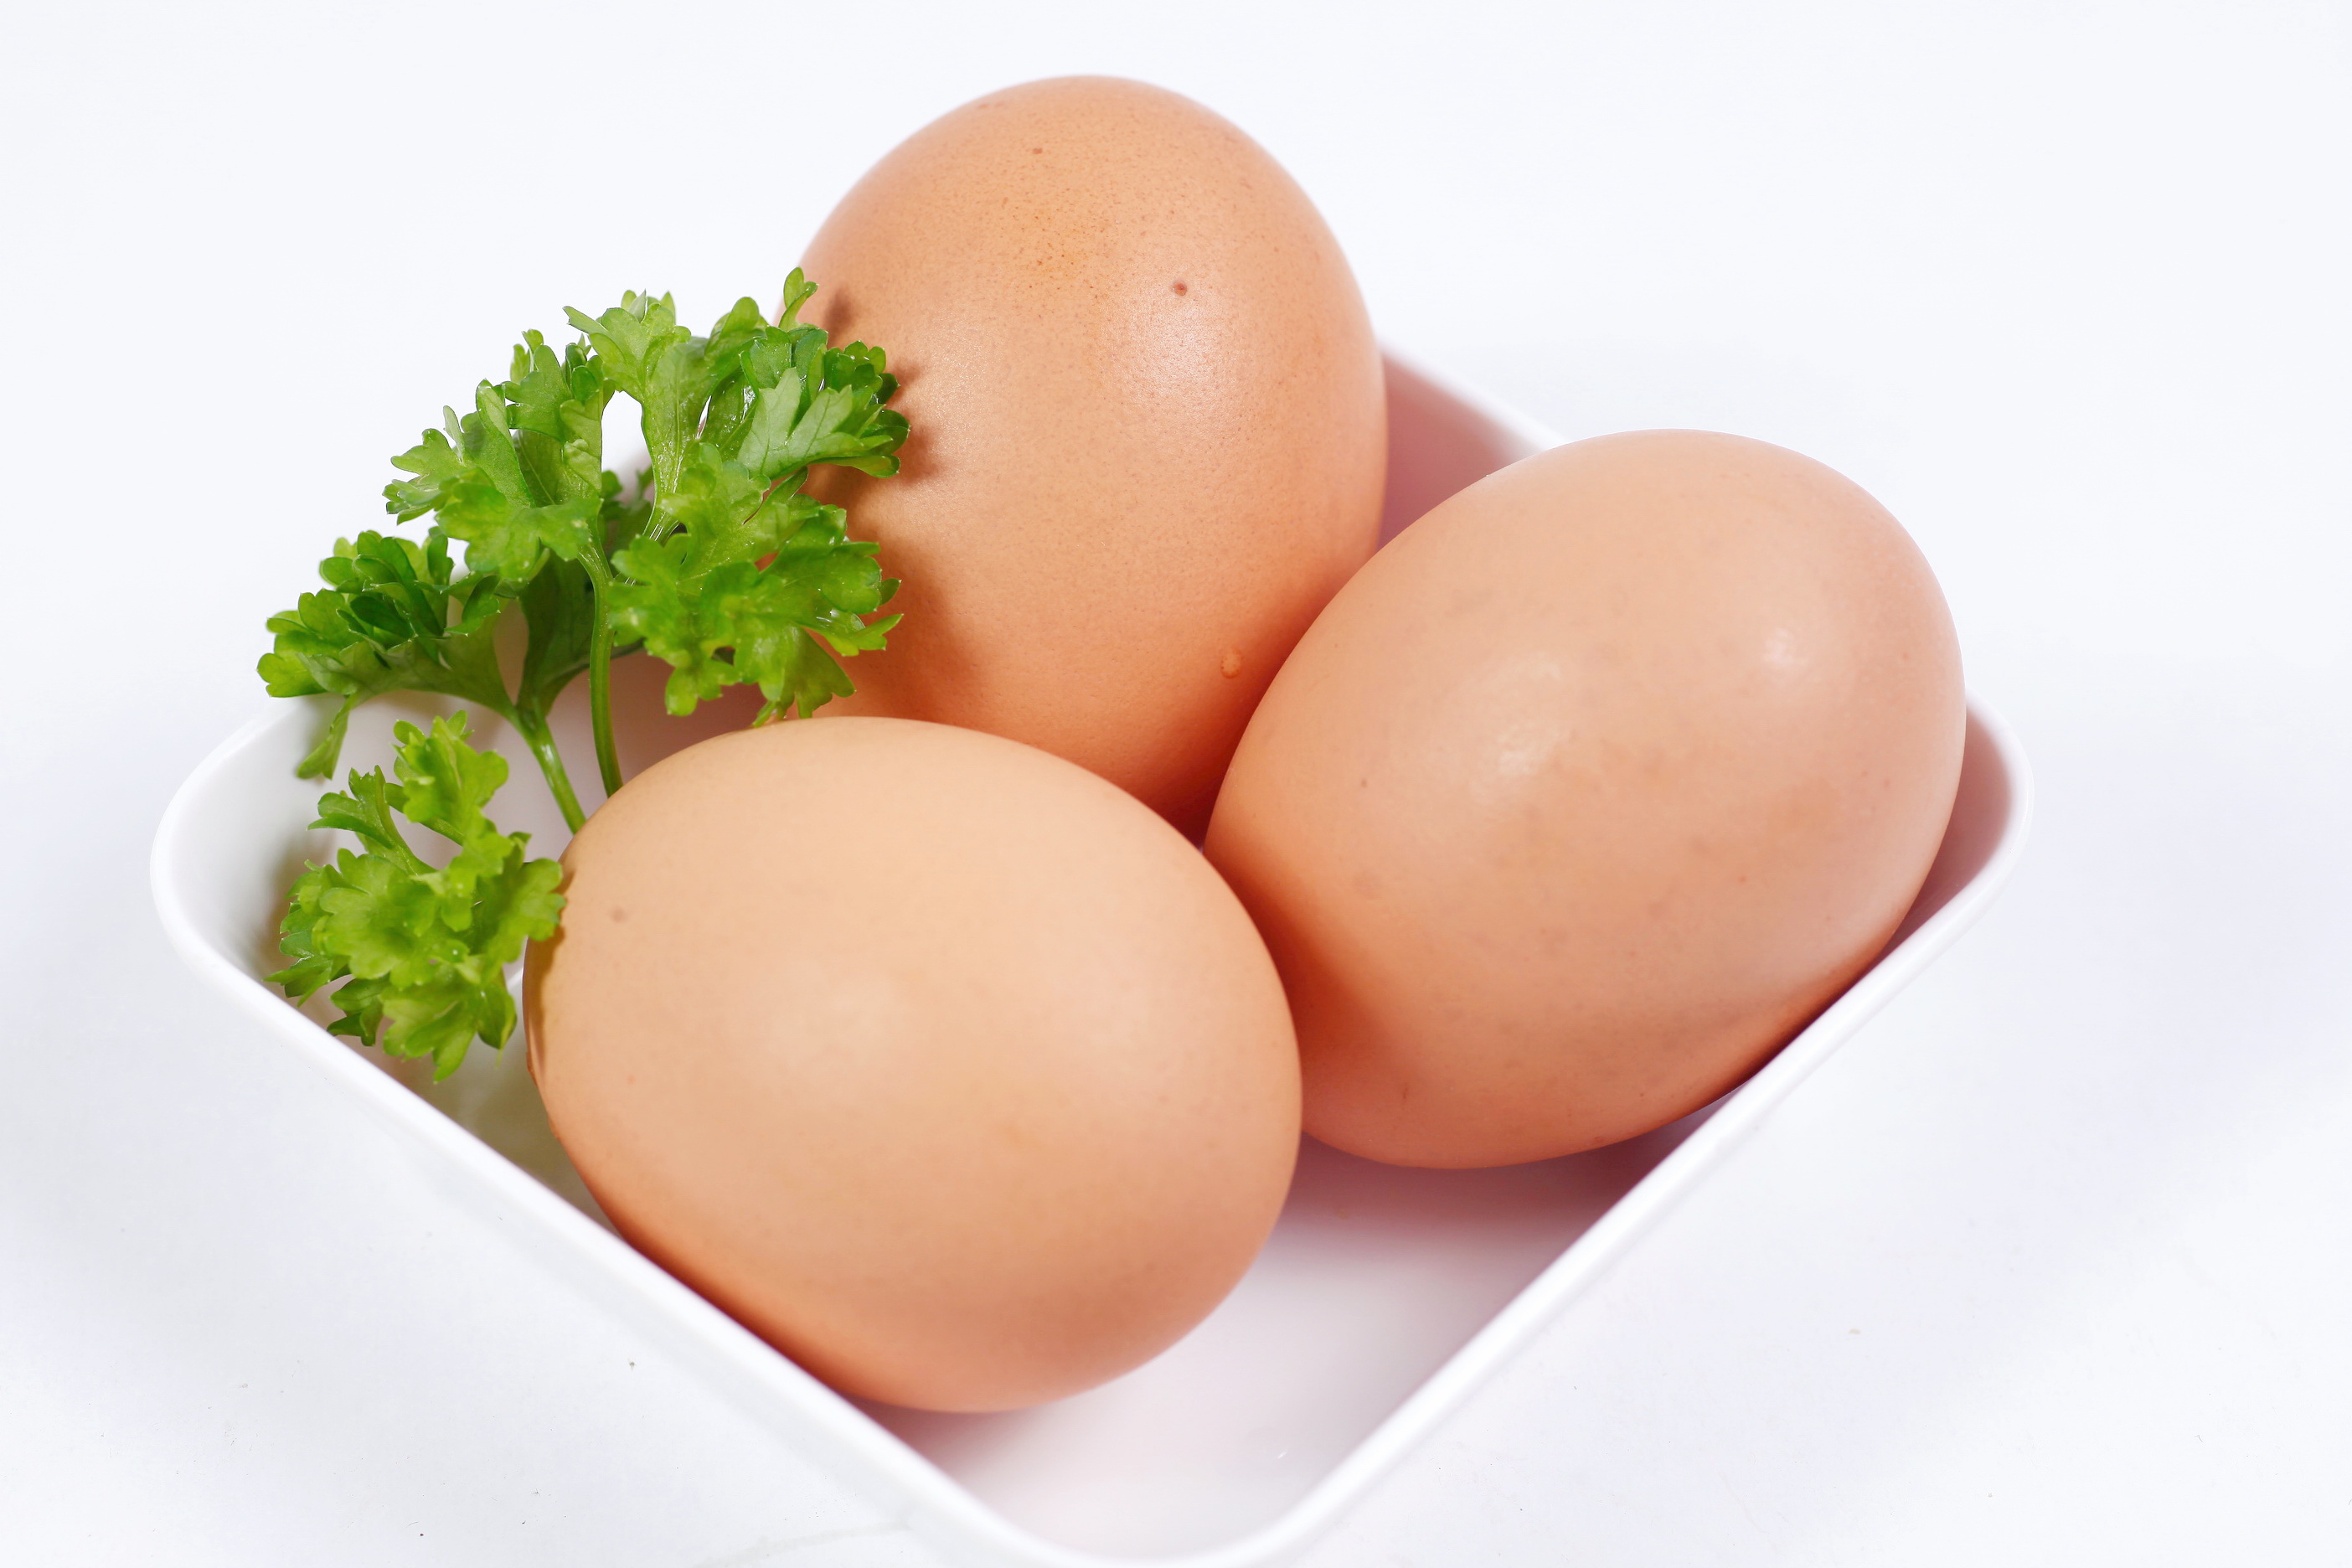 Trứng: Trứng cung cấp cho bạn những chất đạm cần thiết, trong lòng đỏ trứng đóng vai trò chuyển hoá các protein bổ dưỡng và không làm tawg cholesterol trong máu. Theo nghiên cứu, ăn 2 quả trứng vào buổi sáng, sẽ làm cho bụng có cảm giác thoải mái trong 24h.